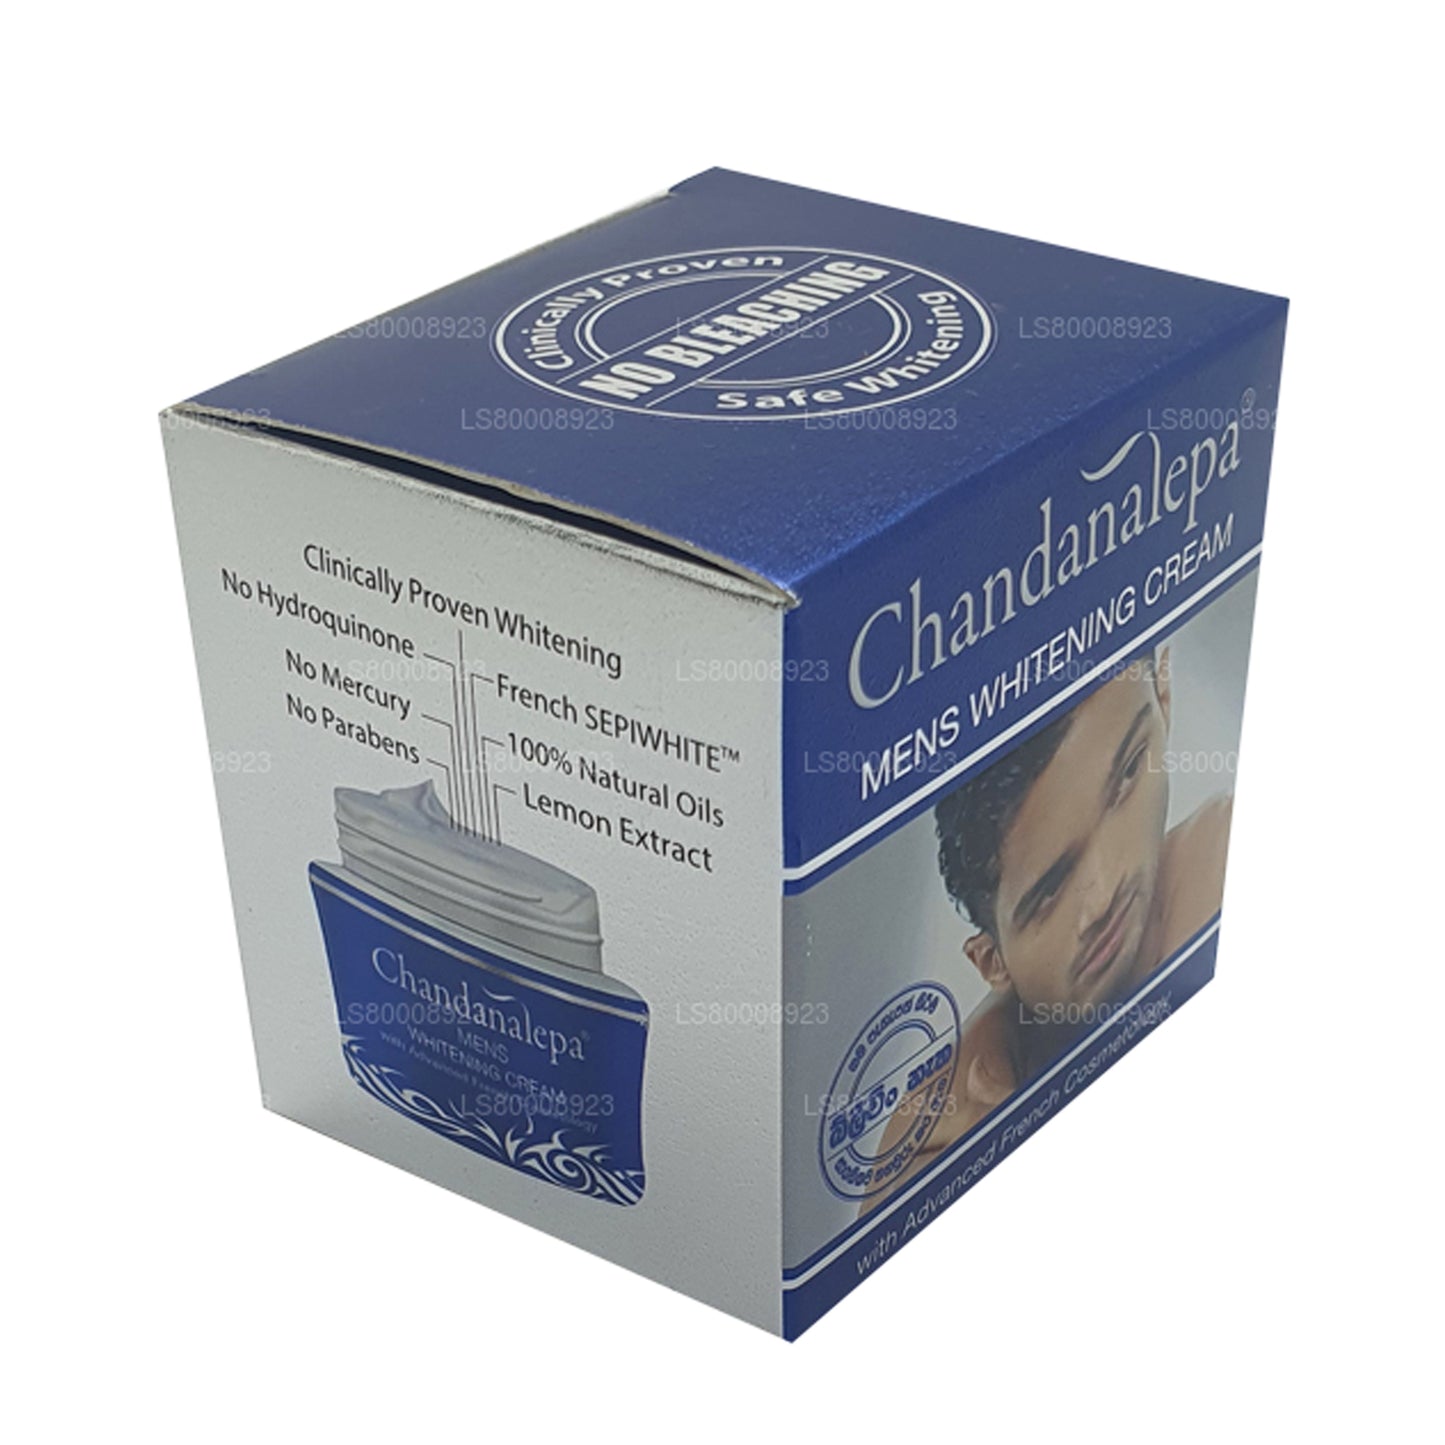 Chandanalepa Herre Whitening Cream (20g)